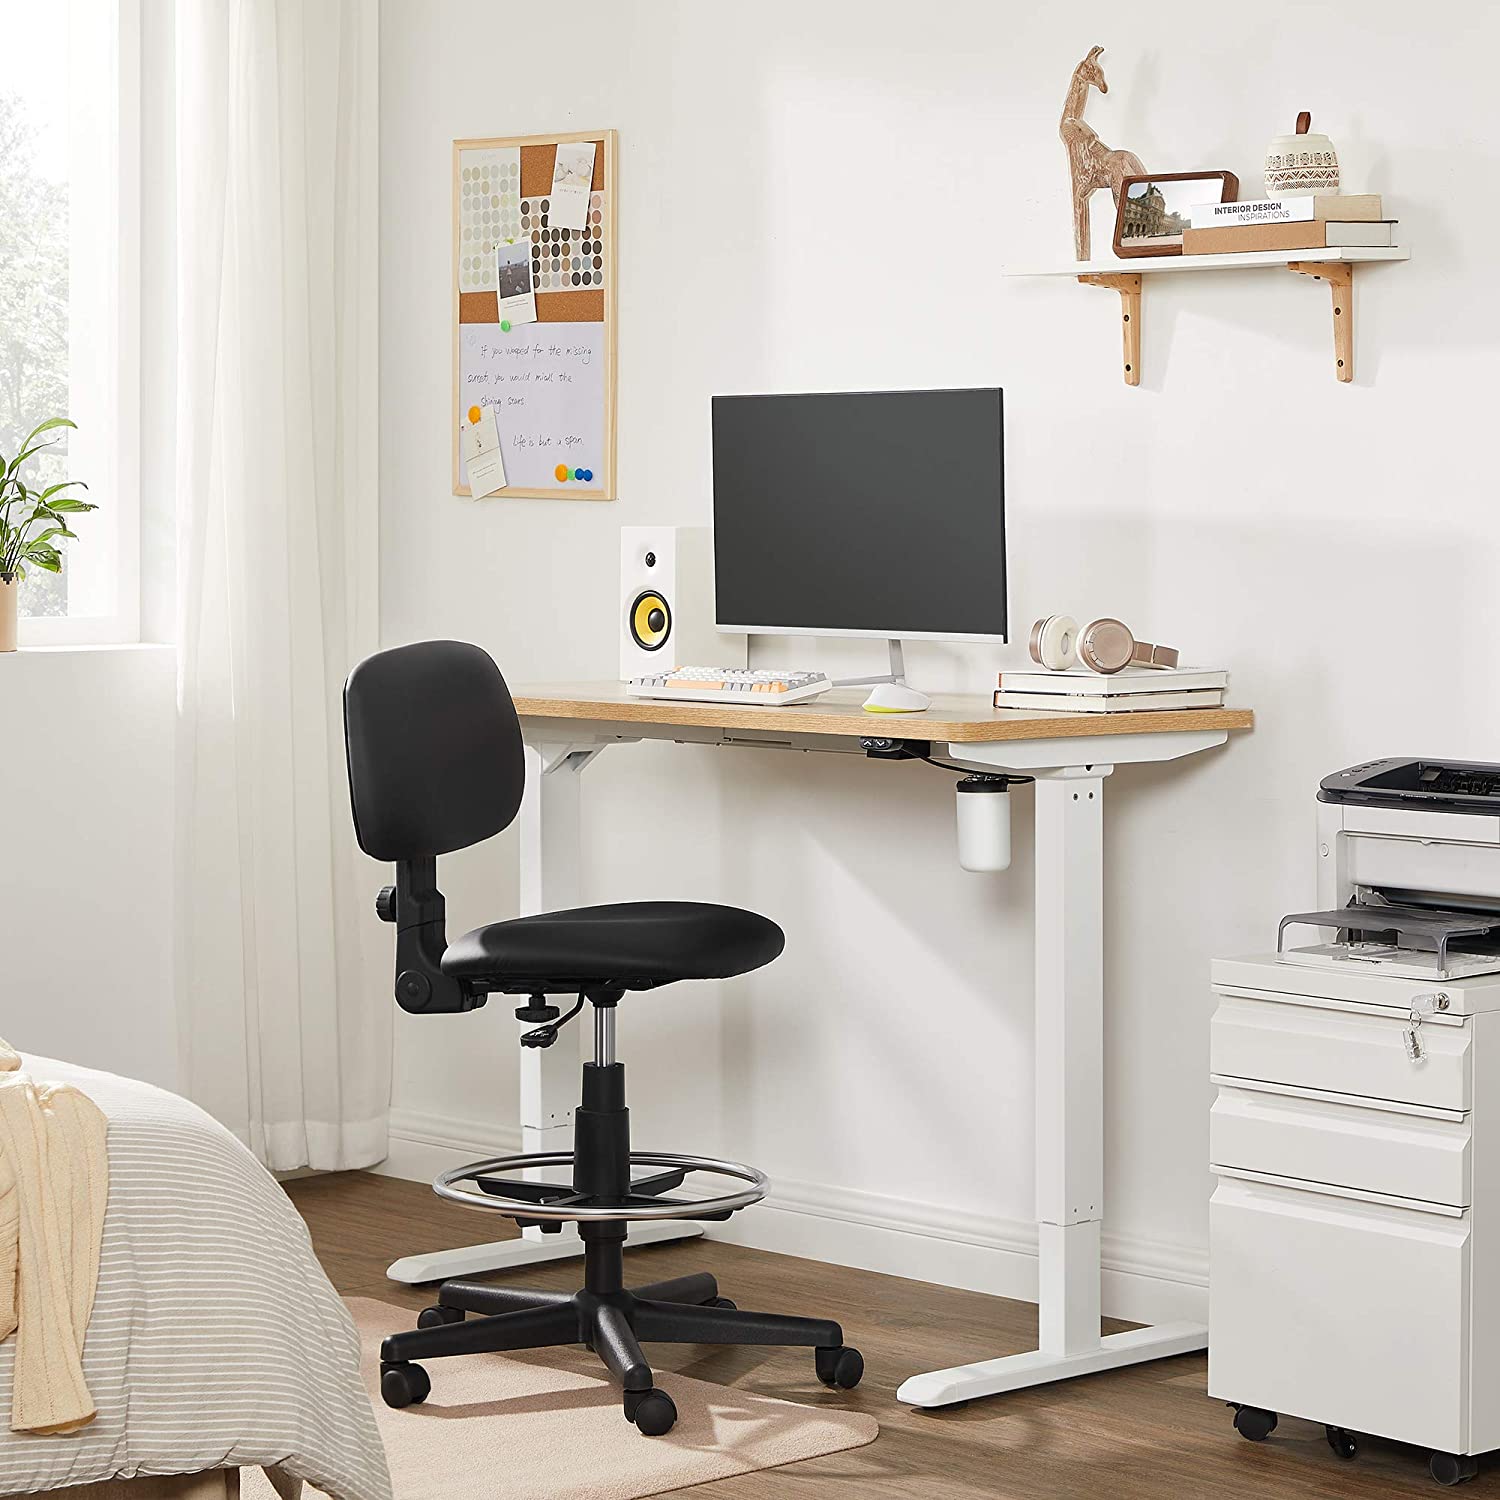 Nancy's Okemos Desk sit-stand frame - Adjustable desk legs - Stand-up desk - Electric sit-stand desk - Height-adjustable desk - Length Adjustable - Steel - White - W115cm to 147cm x D60cm x H71cm to 112cm